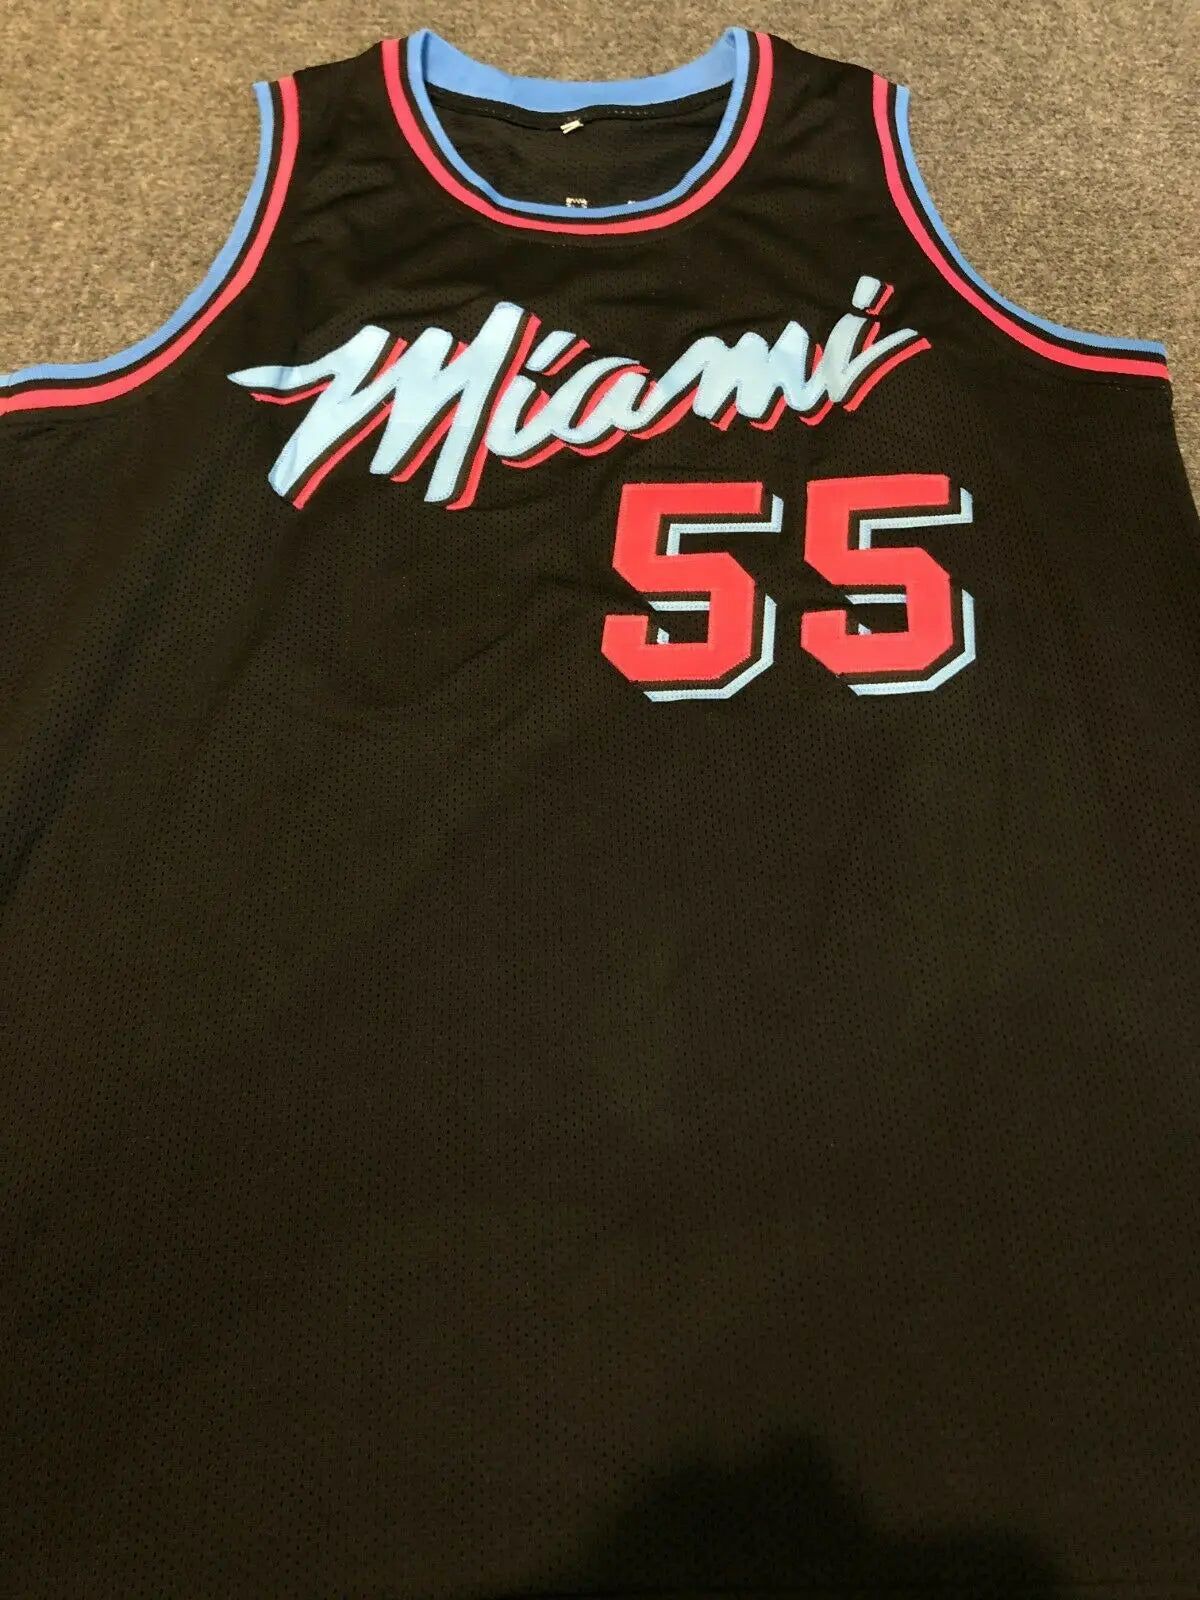 Miami Heat New Vice Jerseys 